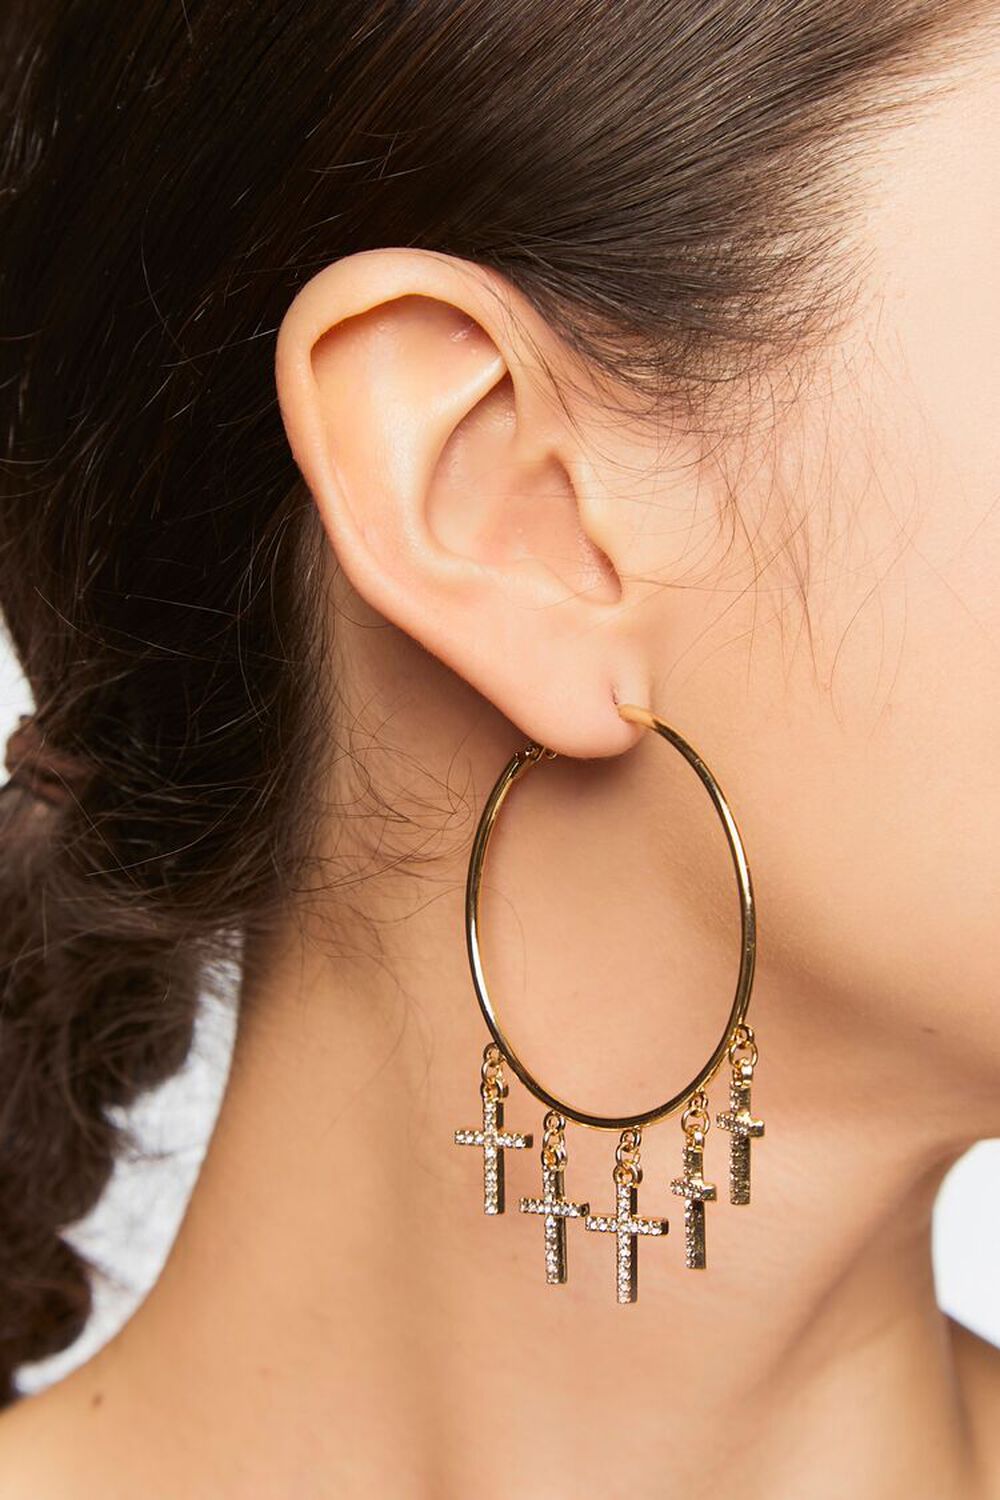 GOLD Rhinestone Cross Hoop Earrings, image 1